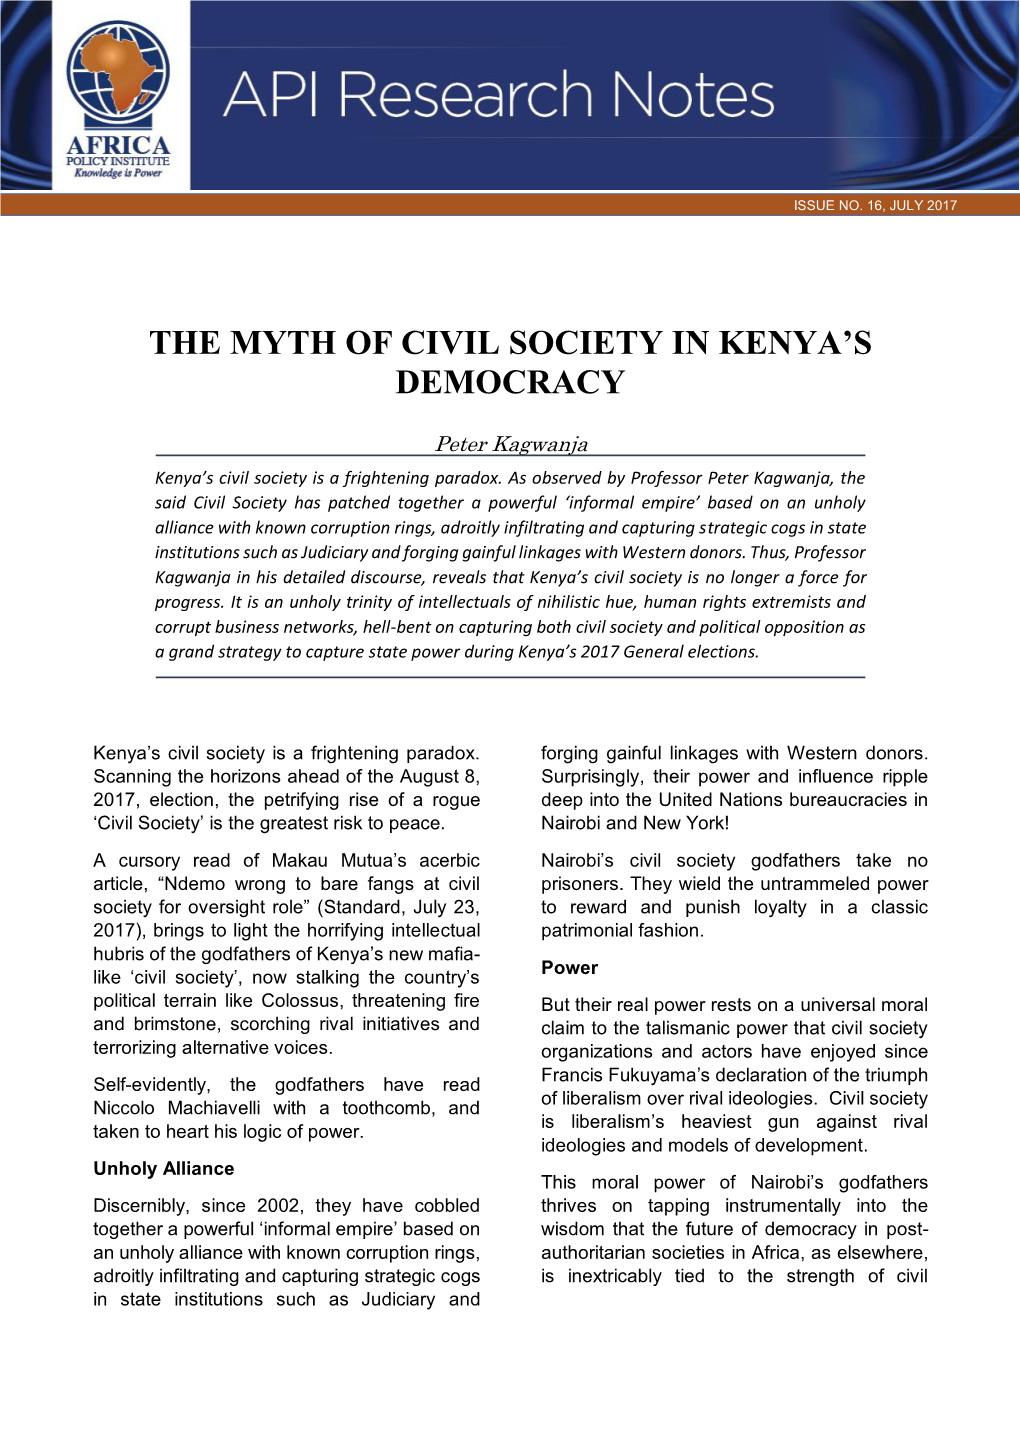 The Myth of Civil Society in Kenya's Democracy